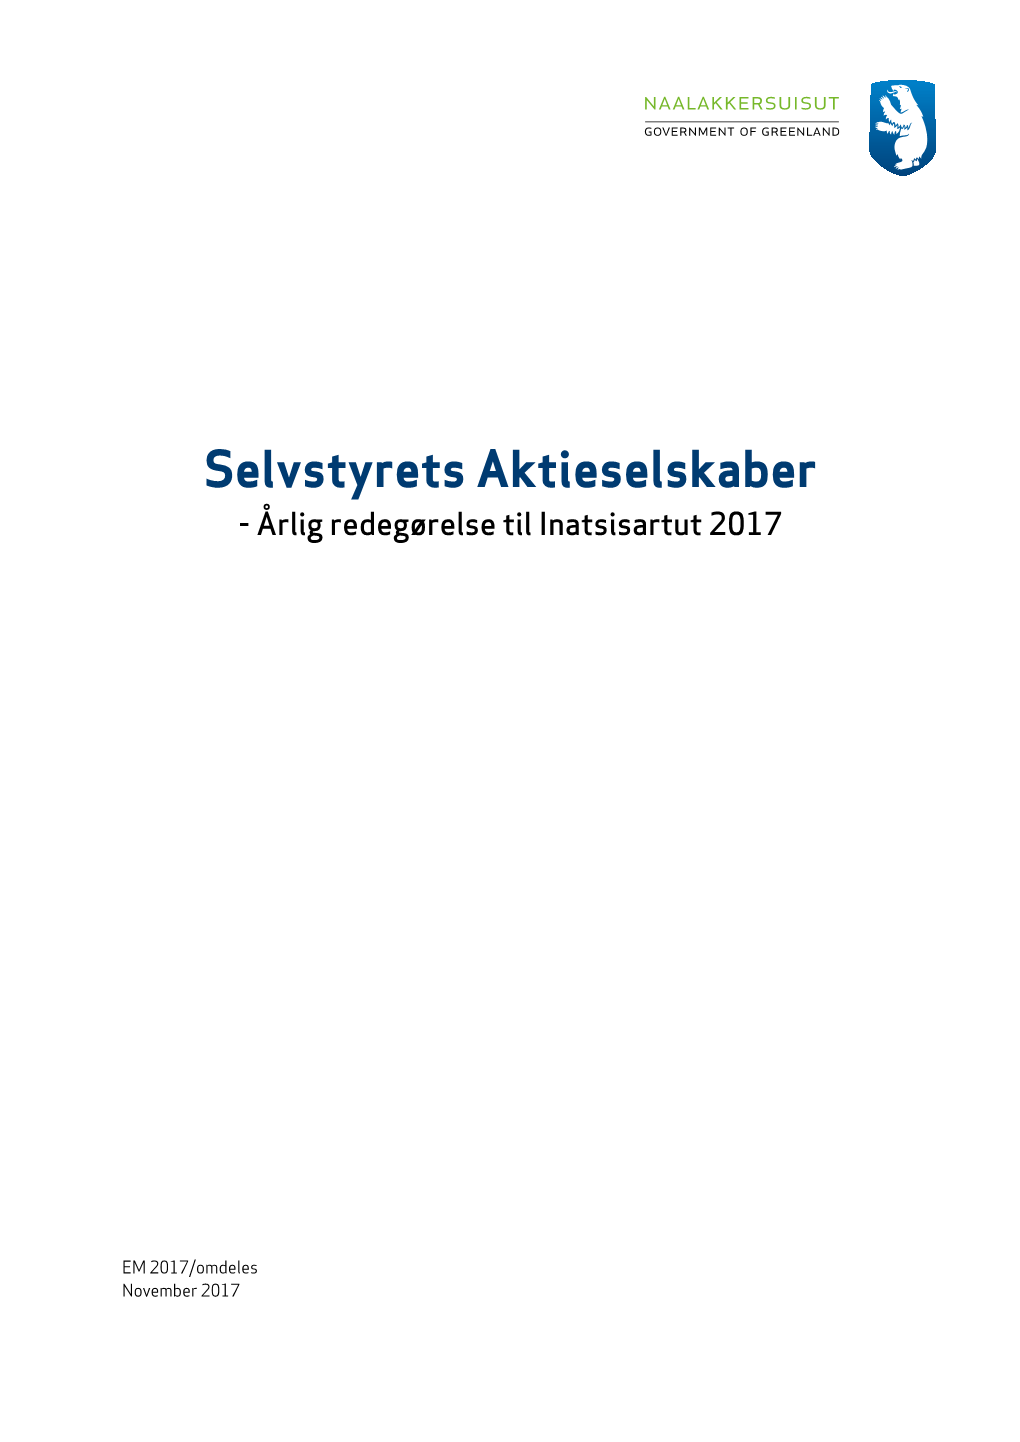 Selvstyrets Aktieselskaber - Årlig Redegørelse Til Inatsisartut 2017